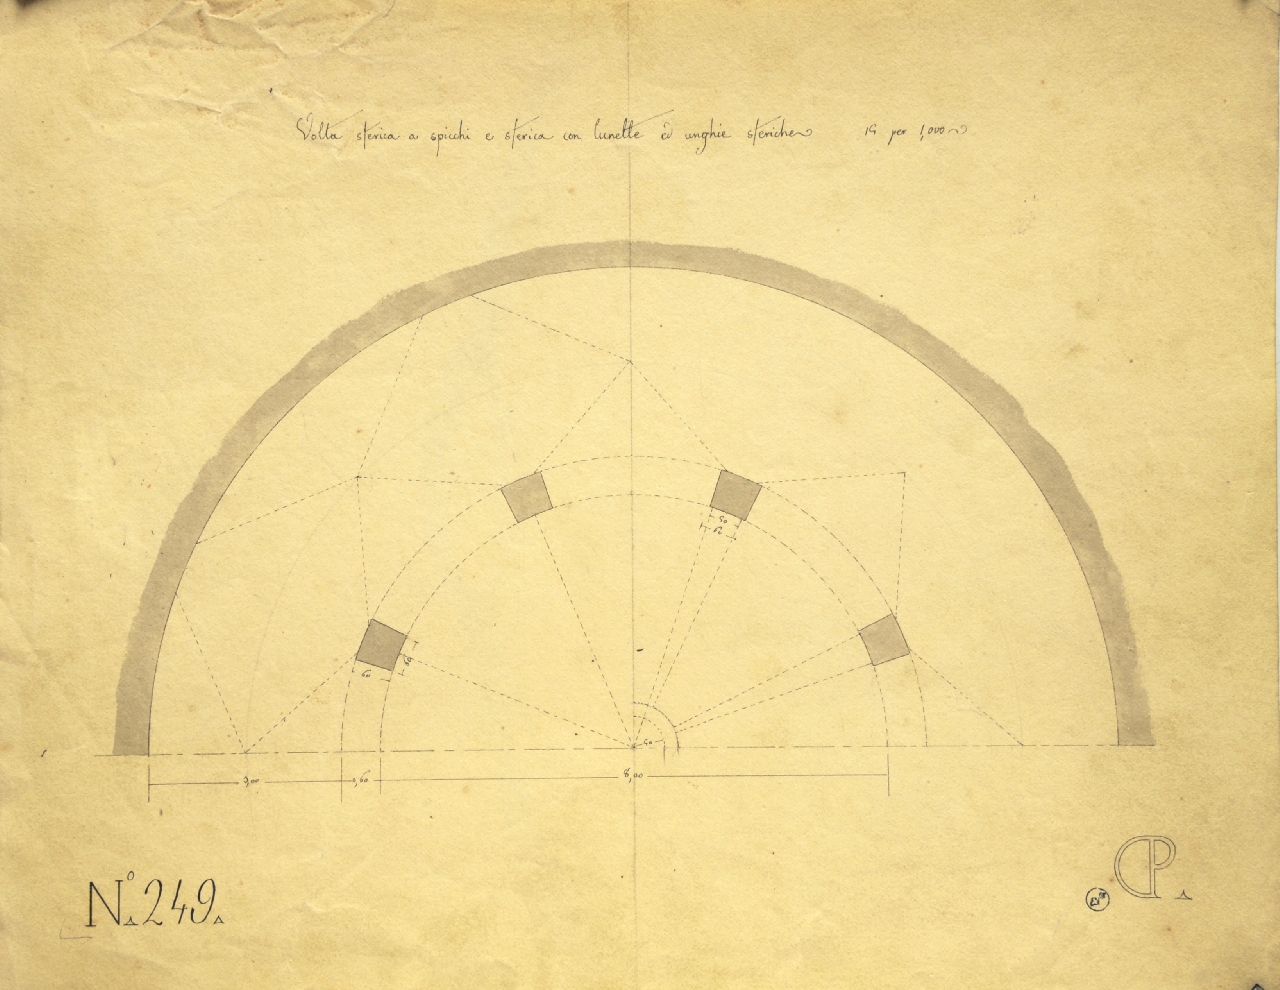 Studio di geometria: volta sferica a spicchi e lunette (disegno architettonico) di Promis Carlo (secondo quarto sec. XIX)